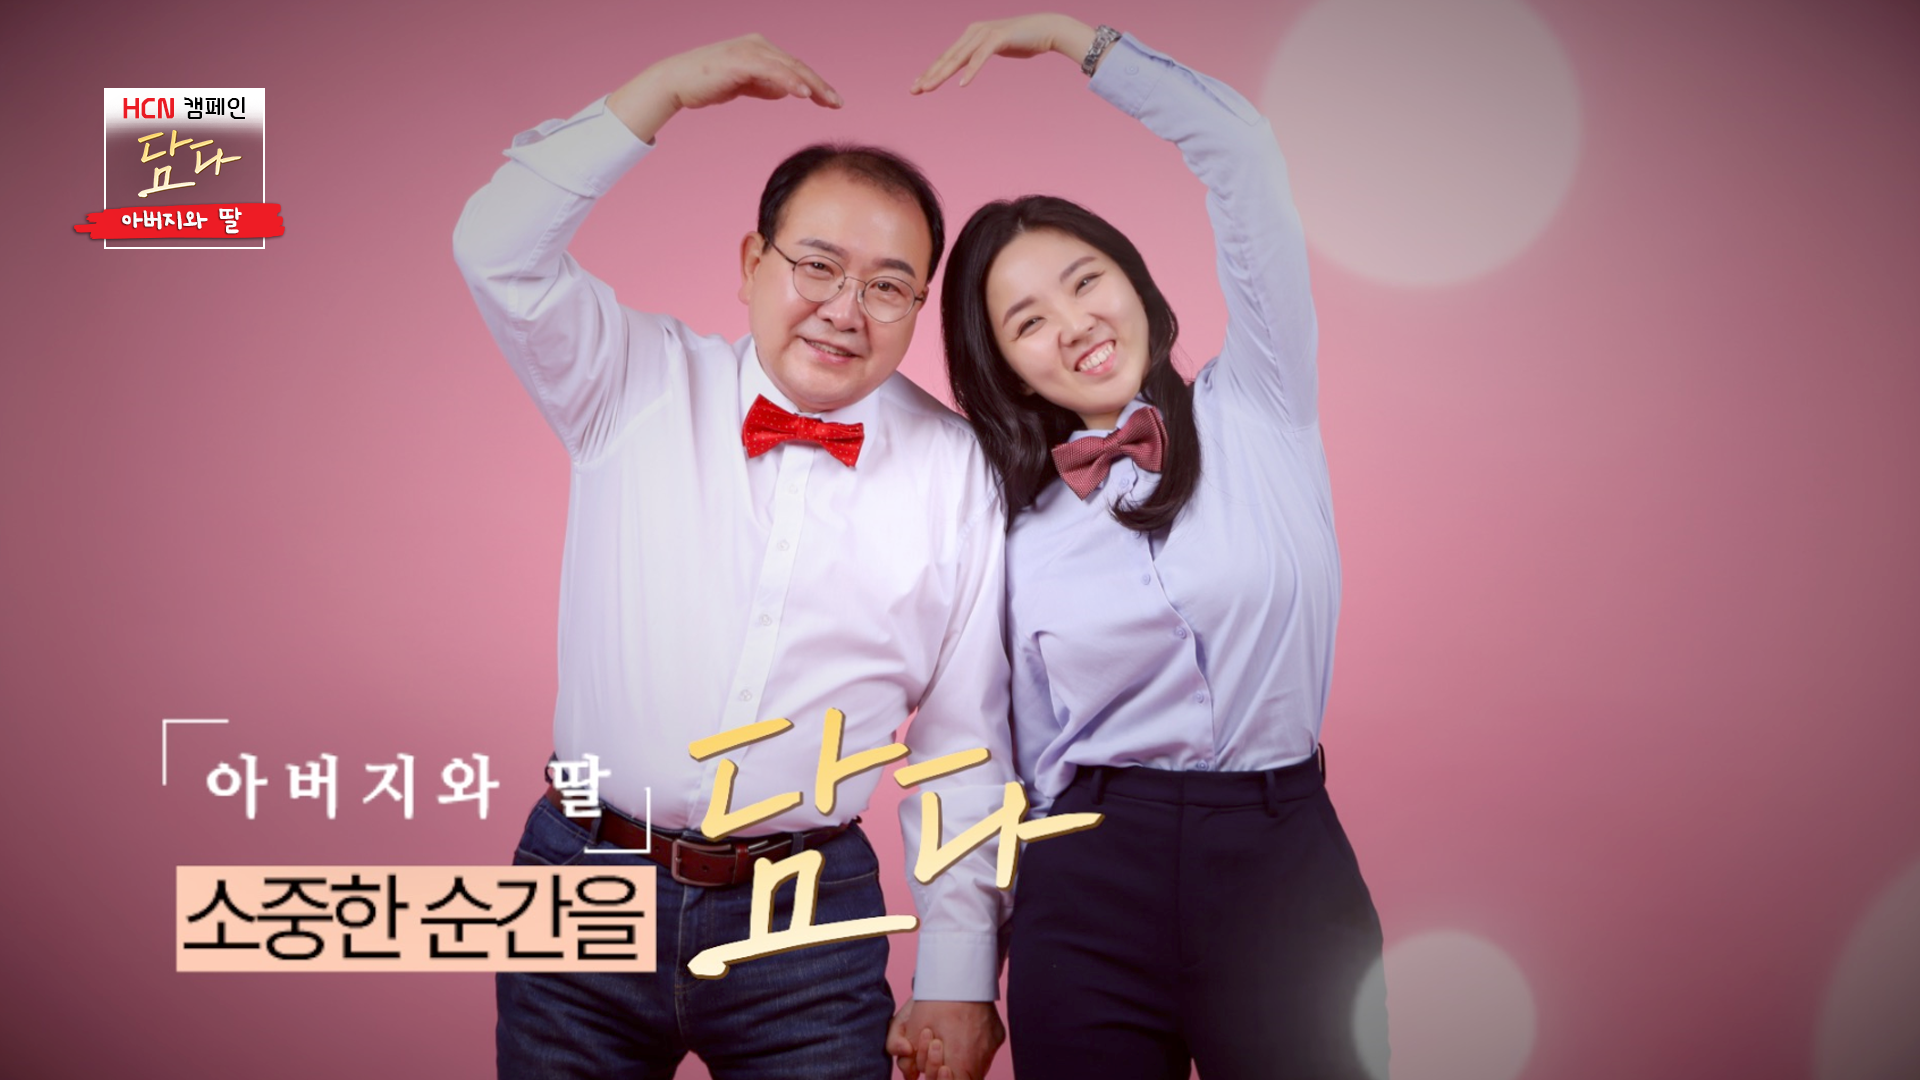 HCN 지역채널 프로그램의 새 캠페인 담다 1화 '아빠와 딸' 편의 한 장면.jpg